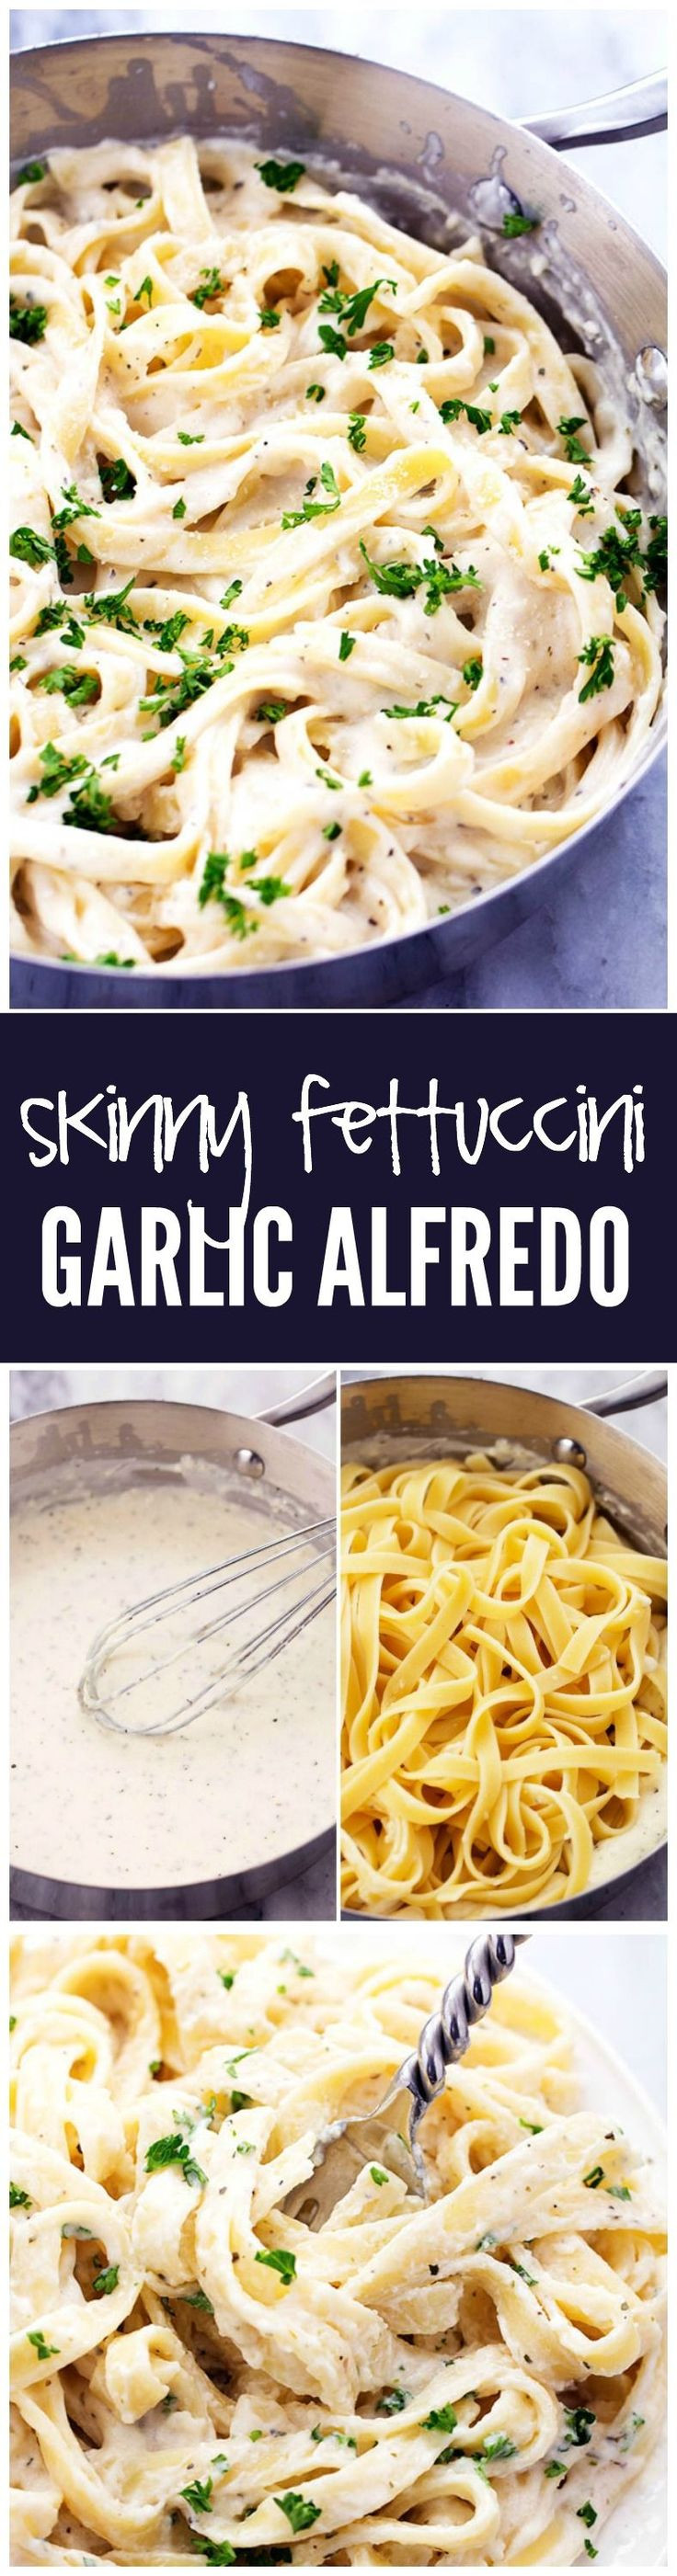 Low Calorie Pasta Sauce Recipes
 25 best ideas about Low calorie pasta on Pinterest